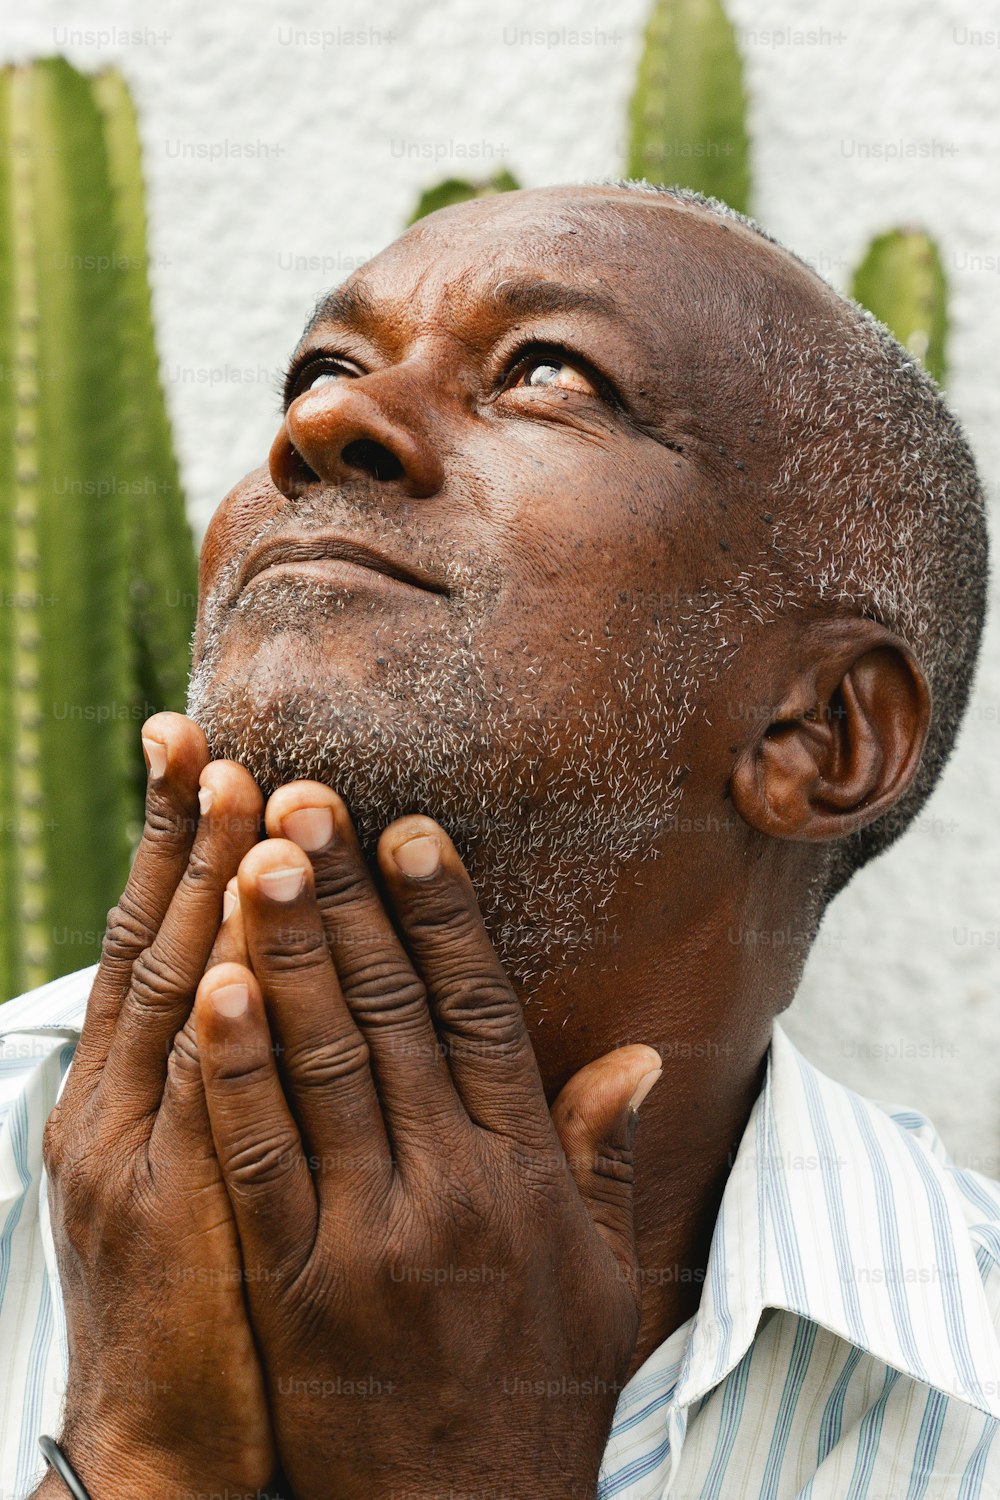 Un homme prie devant un cactus